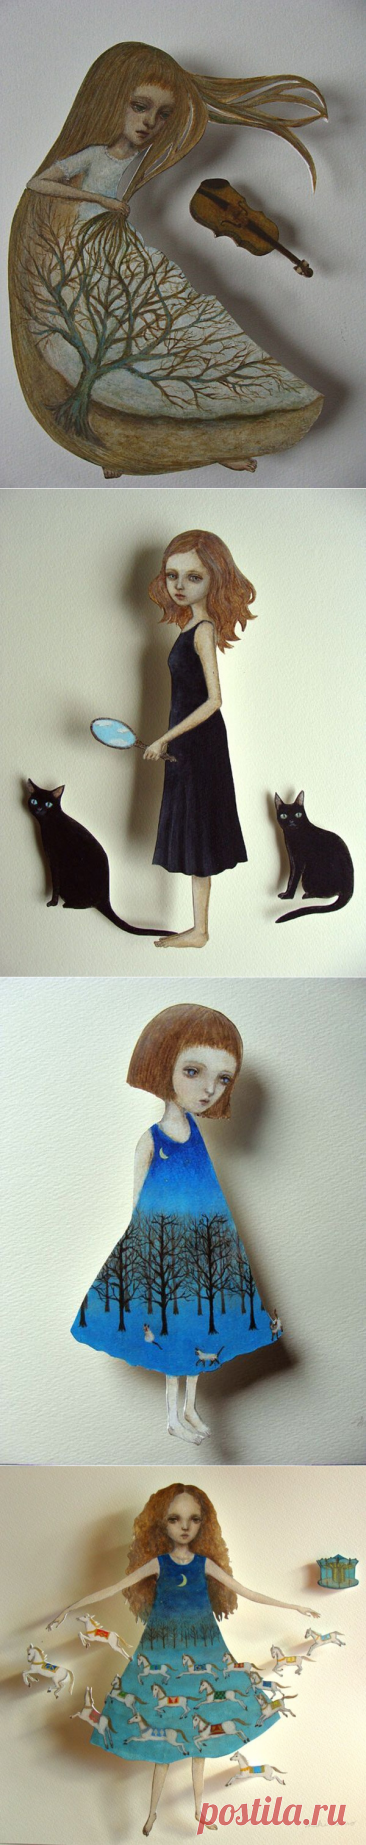 Бумажные куклы японской художницы Maki Hino: квинтэссенция нежности и мудрости